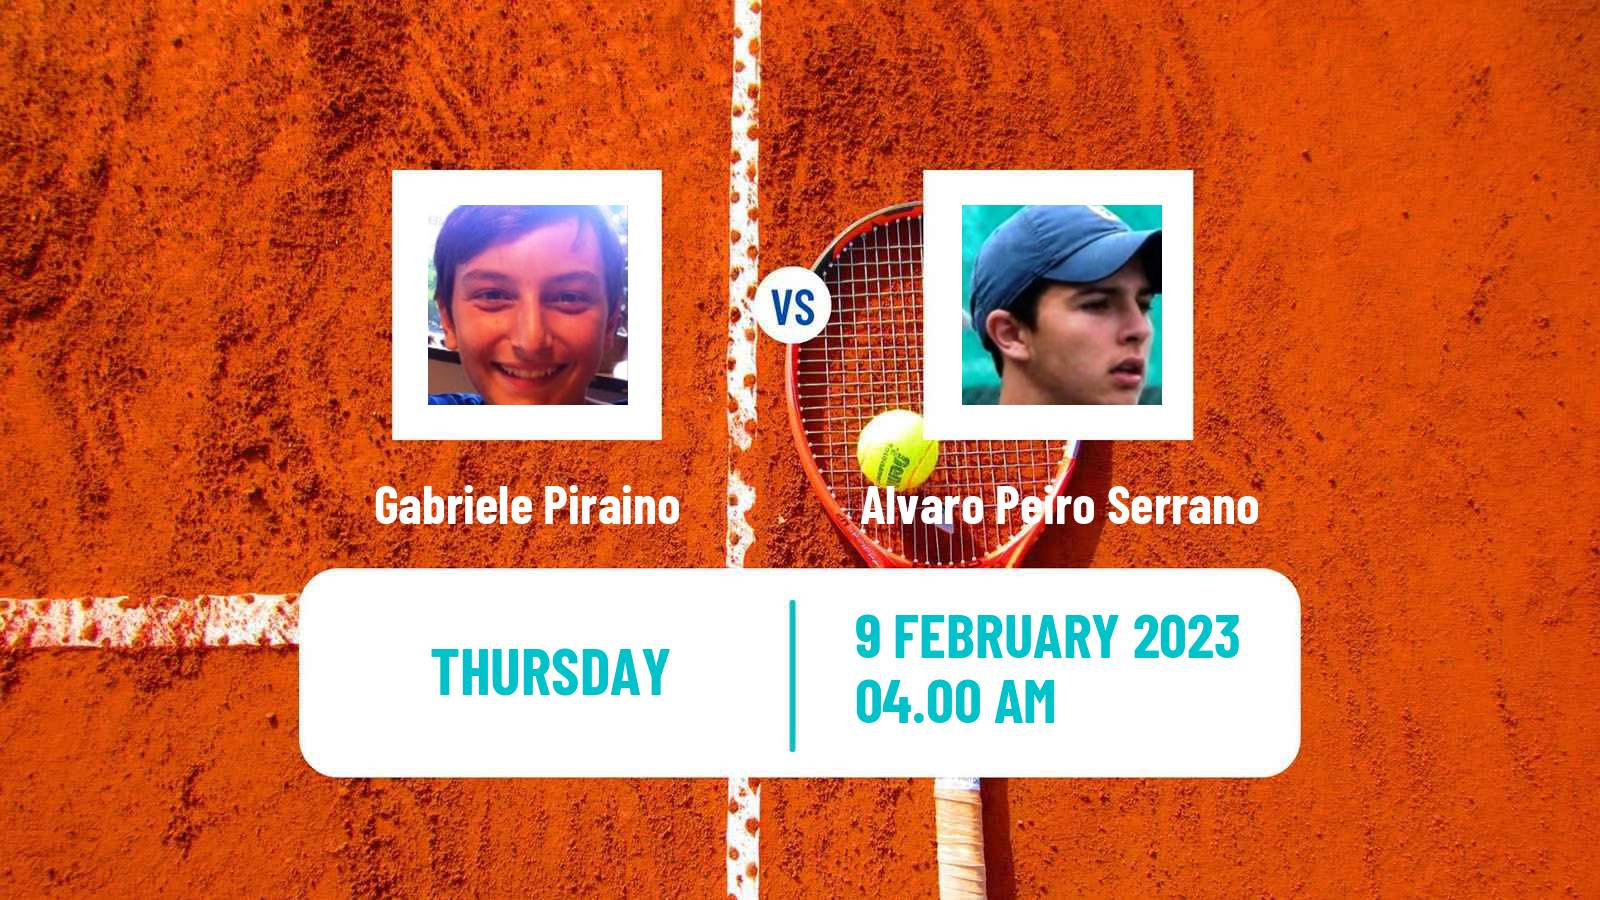 Tennis ITF Tournaments Gabriele Piraino - Alvaro Peiro Serrano